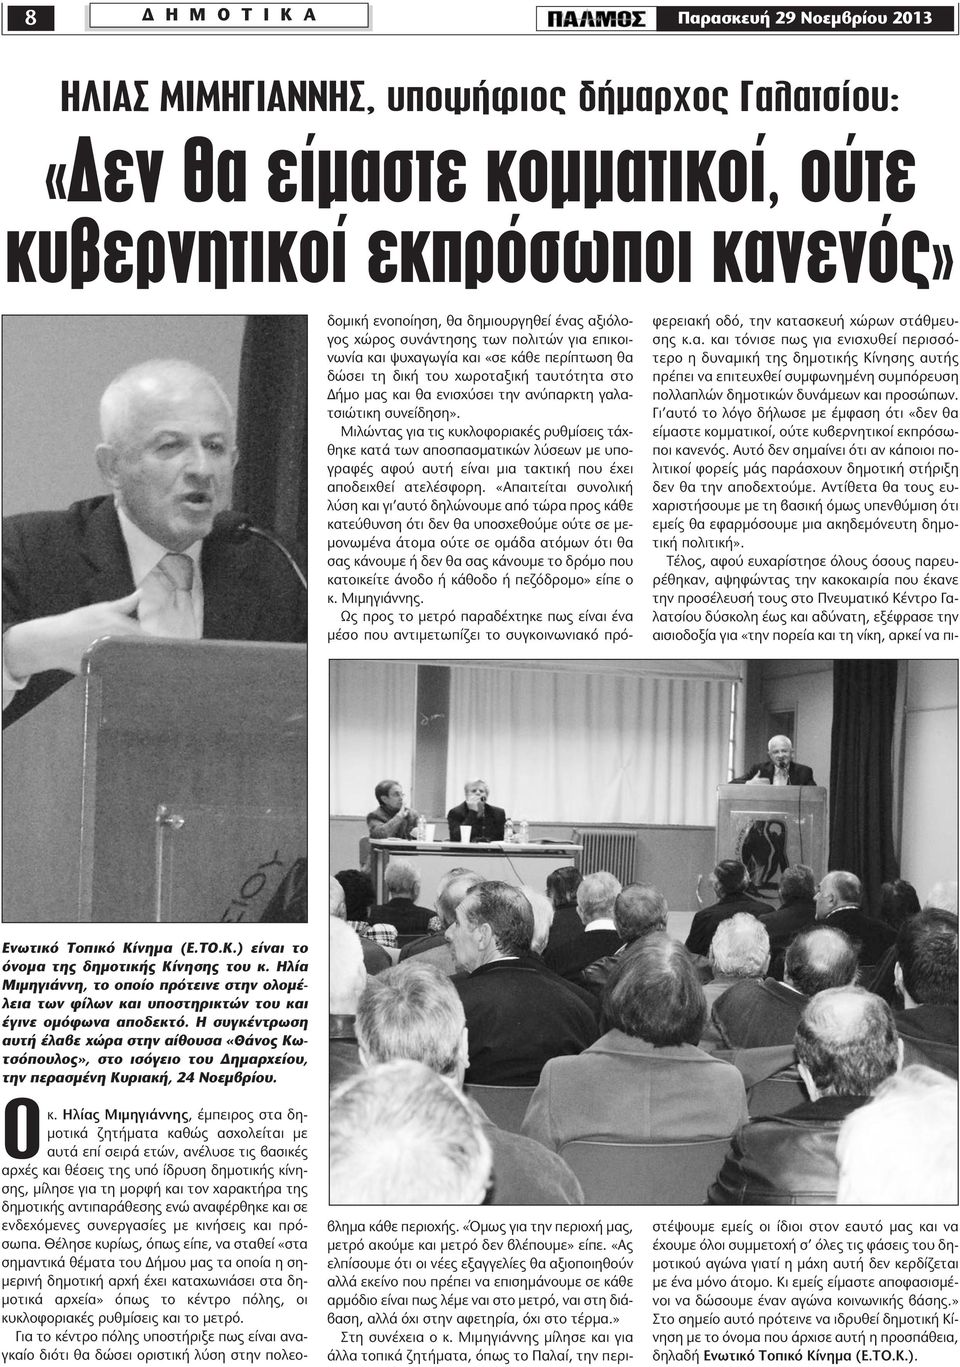 Η συγκέντρωση αυτή έλαβε χώρα στην αίθουσα «Θάνος Κωτσόπουλος», στο ισόγειο του ηµαρχείου, την περασµένη Κυριακή, 24 Νοεµβρίου. Οκ.